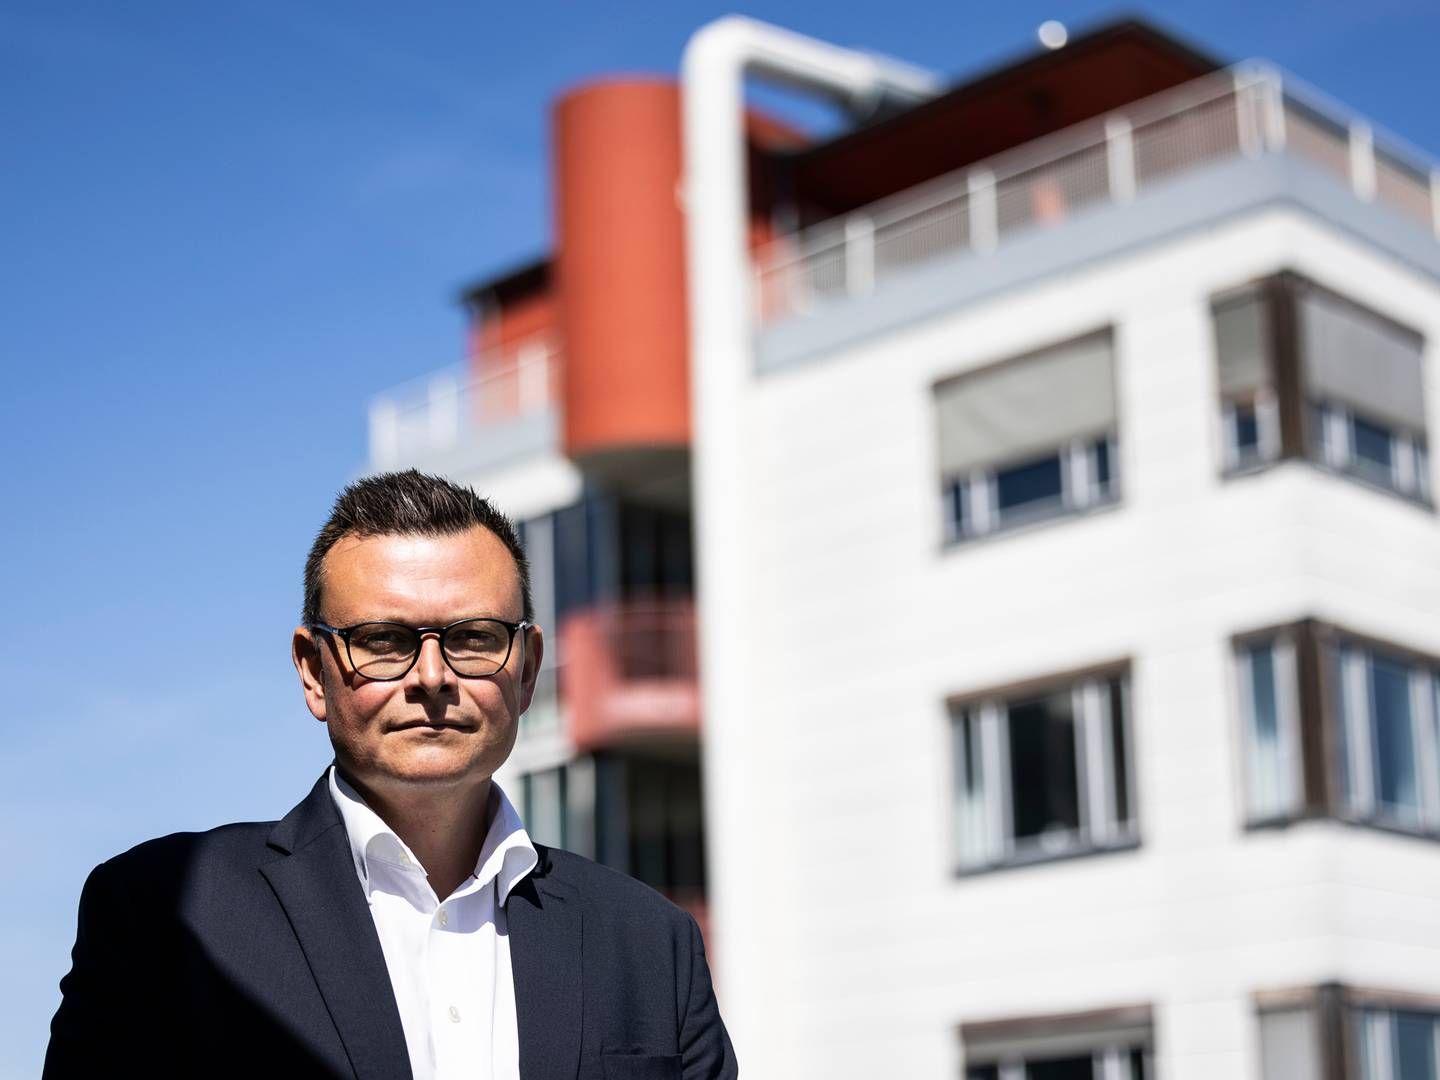 Fremadrettet vil Nordea være opsøgende i jagten på nye kunder til ejendomsfinansiering i flere afkroge af Danmark ifølge den nye head of real estate i erhvervsafdelingen, Morten Egon Jørgensen. | Photo: PR / Nordea